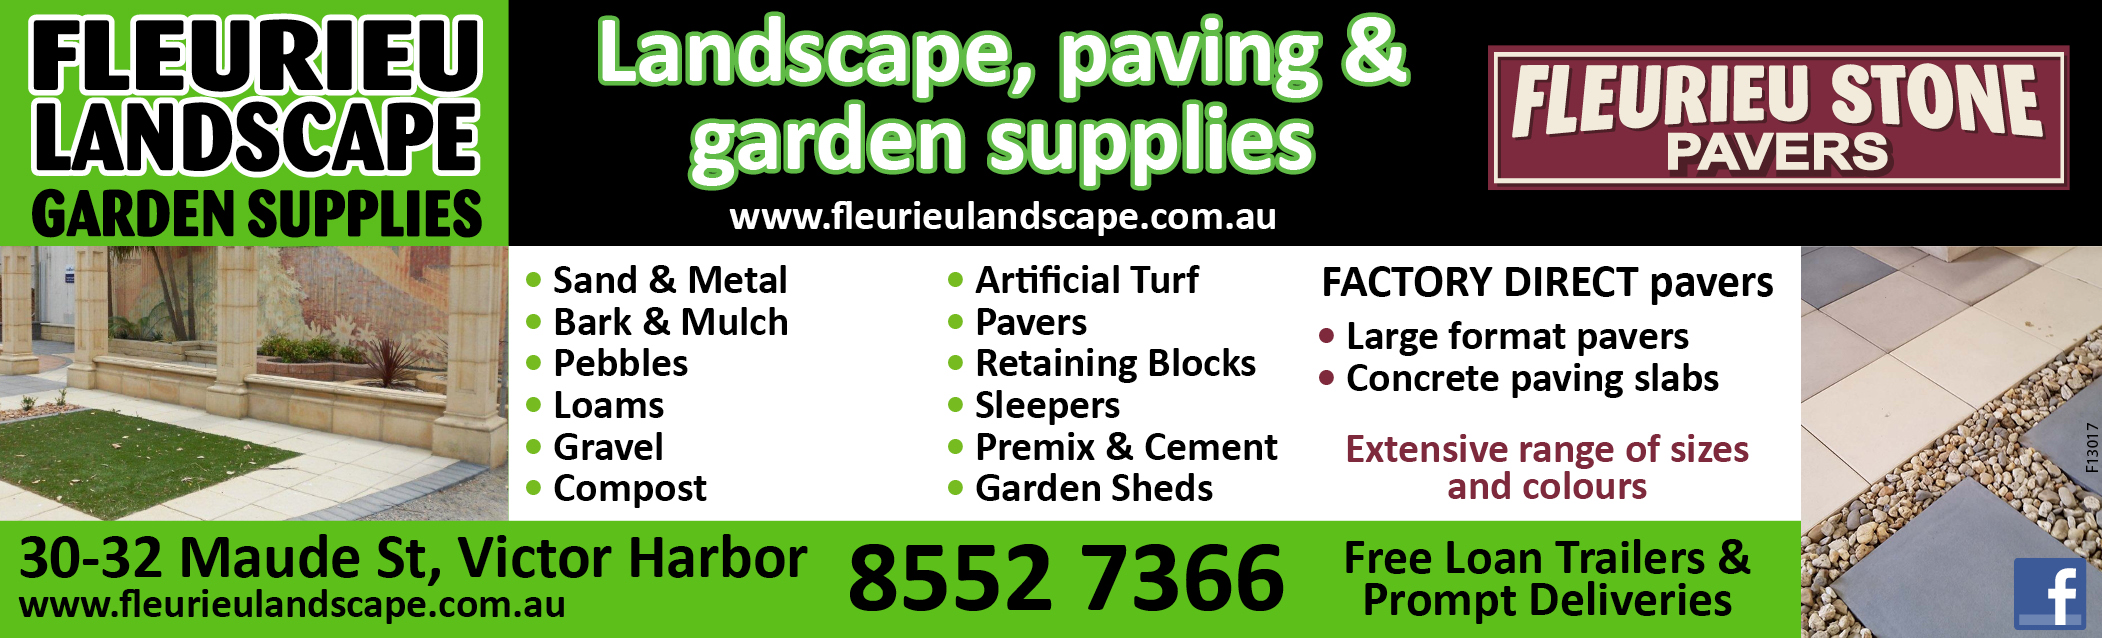 Fleurieu Landscape Garden Supplies Fleurieu Link